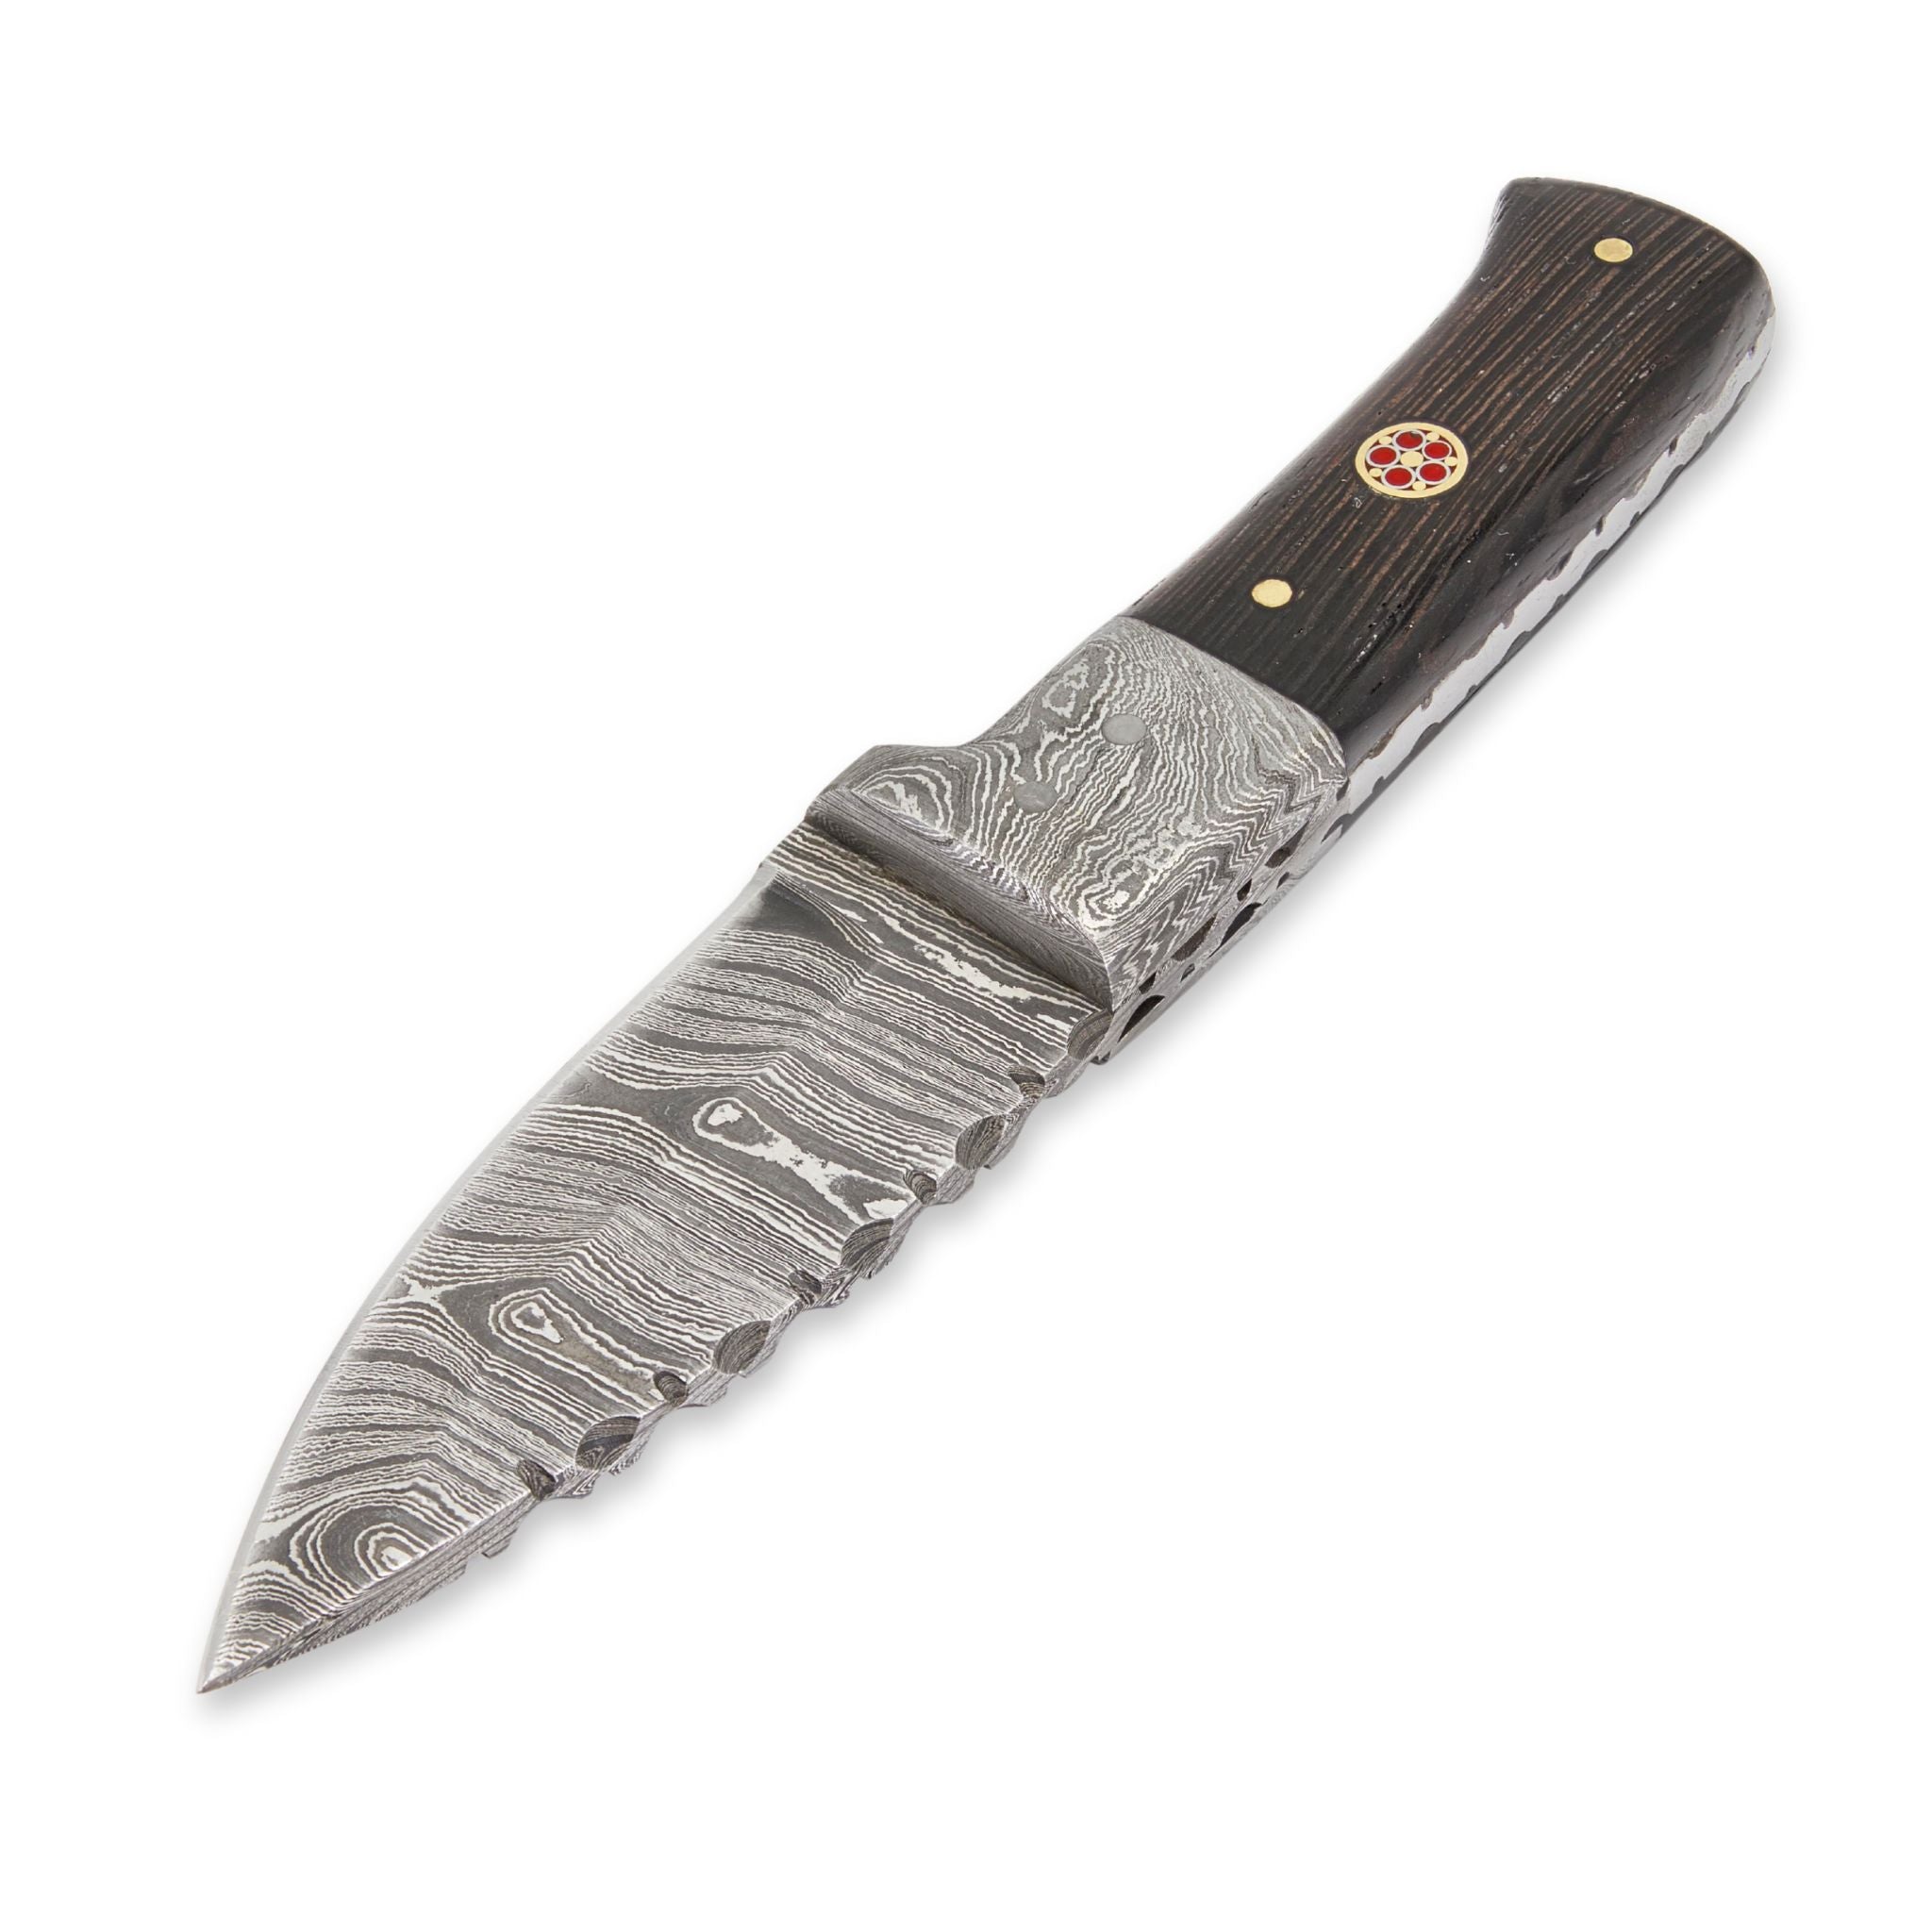 http://pepnimble.com/cdn/shop/files/bush-perk-i-handmade-skinner-knife-damascus-steel-blade-wenge-wood-handle-image-09.jpg?v=1700646732